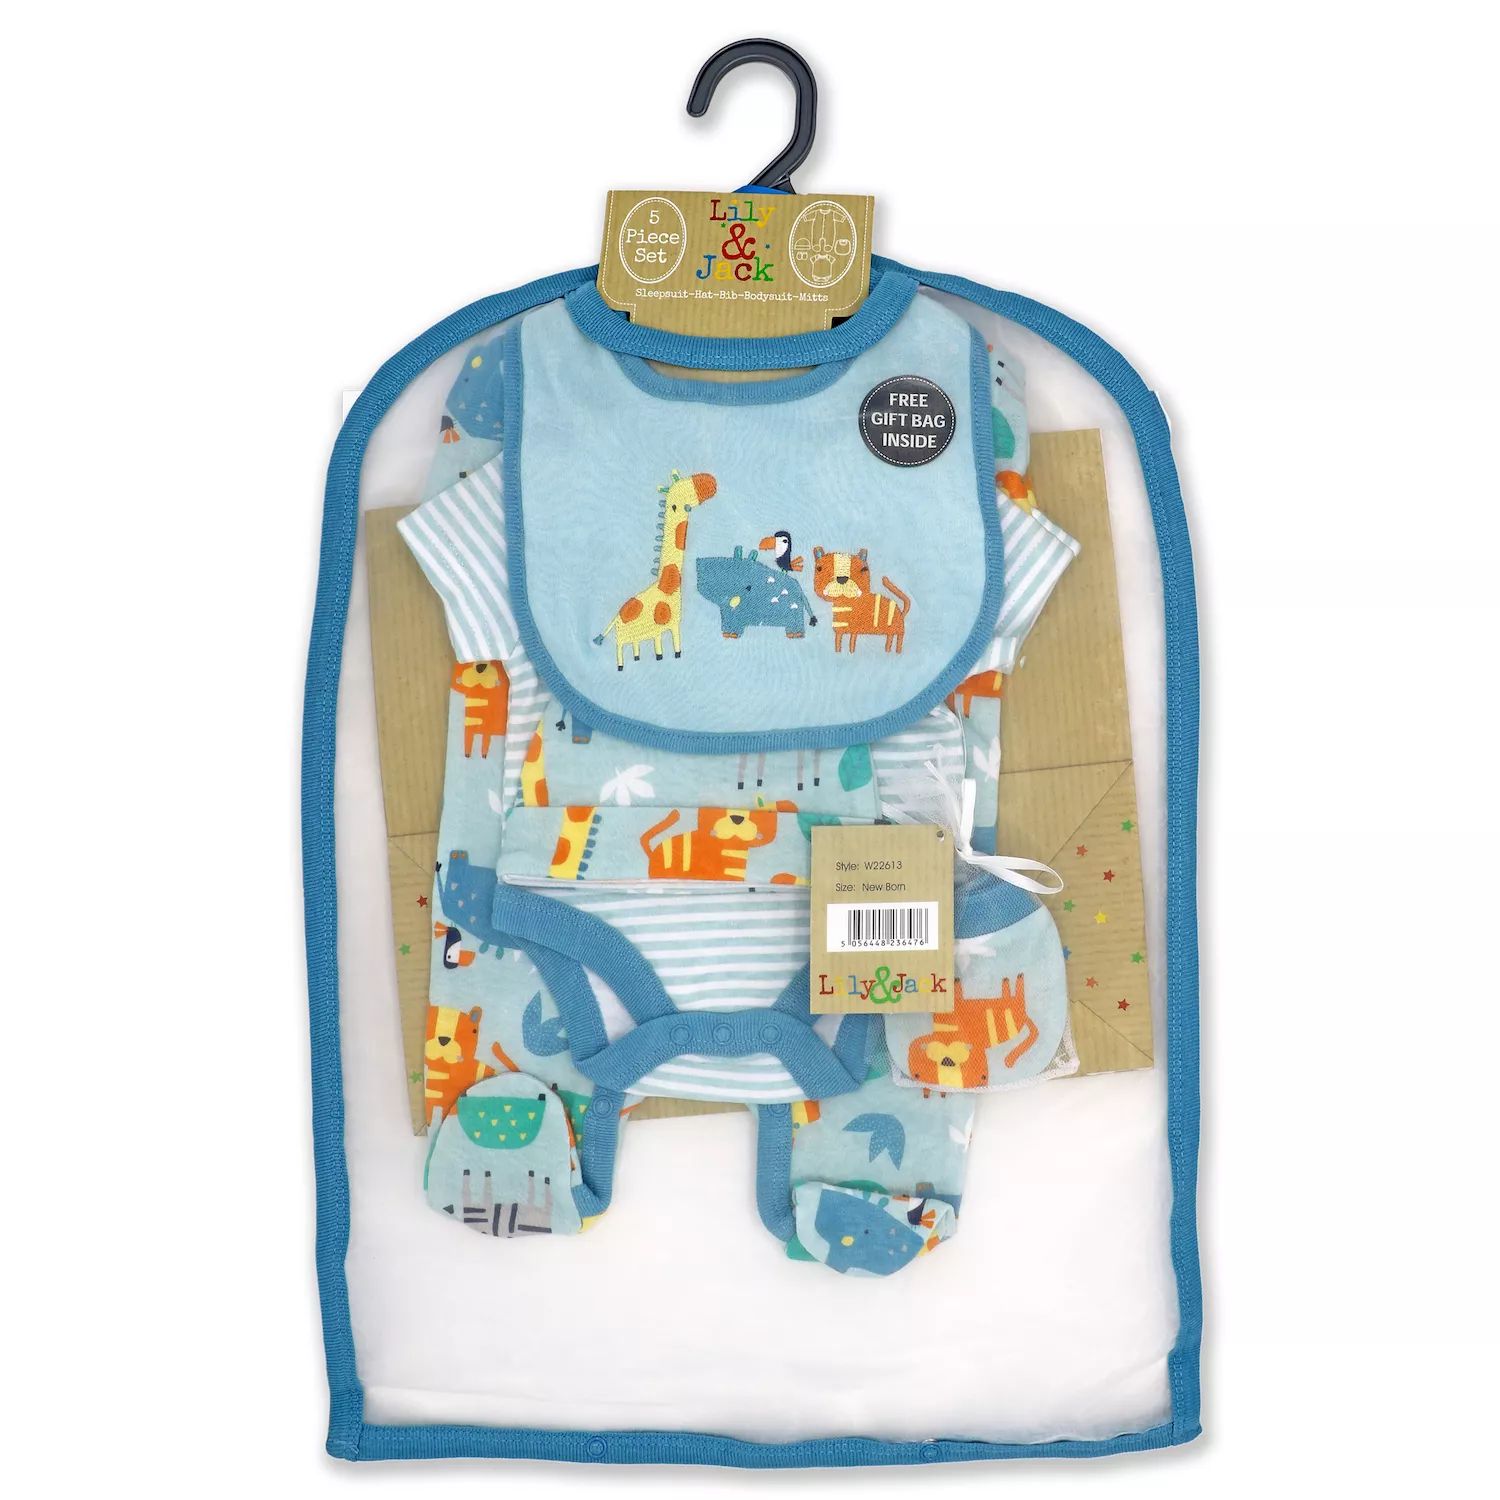 bye bye paris mother baby care bag hi̇gh quality warranty period month 12 Подарочный набор Aqua Safari для мальчиков и девочек из 5 предметов в сетчатой ​​сумке Rock A Bye Baby Boutique